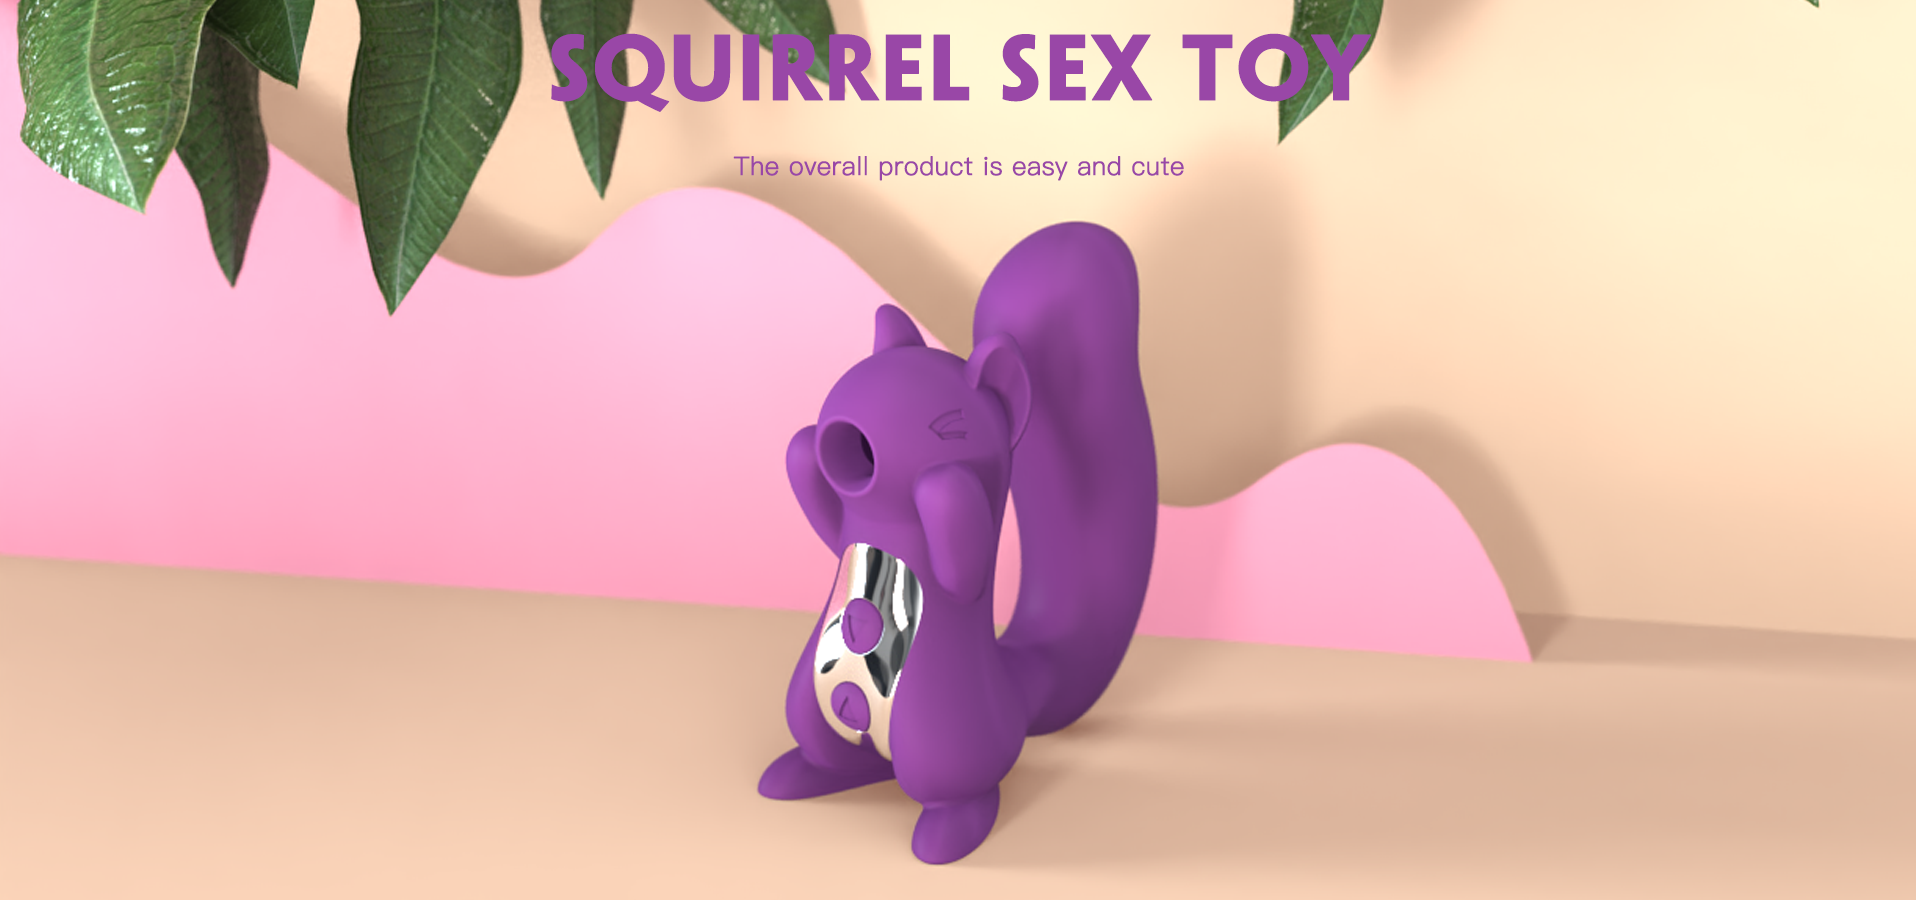 Squirrel Adult sex toy Animal Series female Masturbation squirrel vibrator massager-03